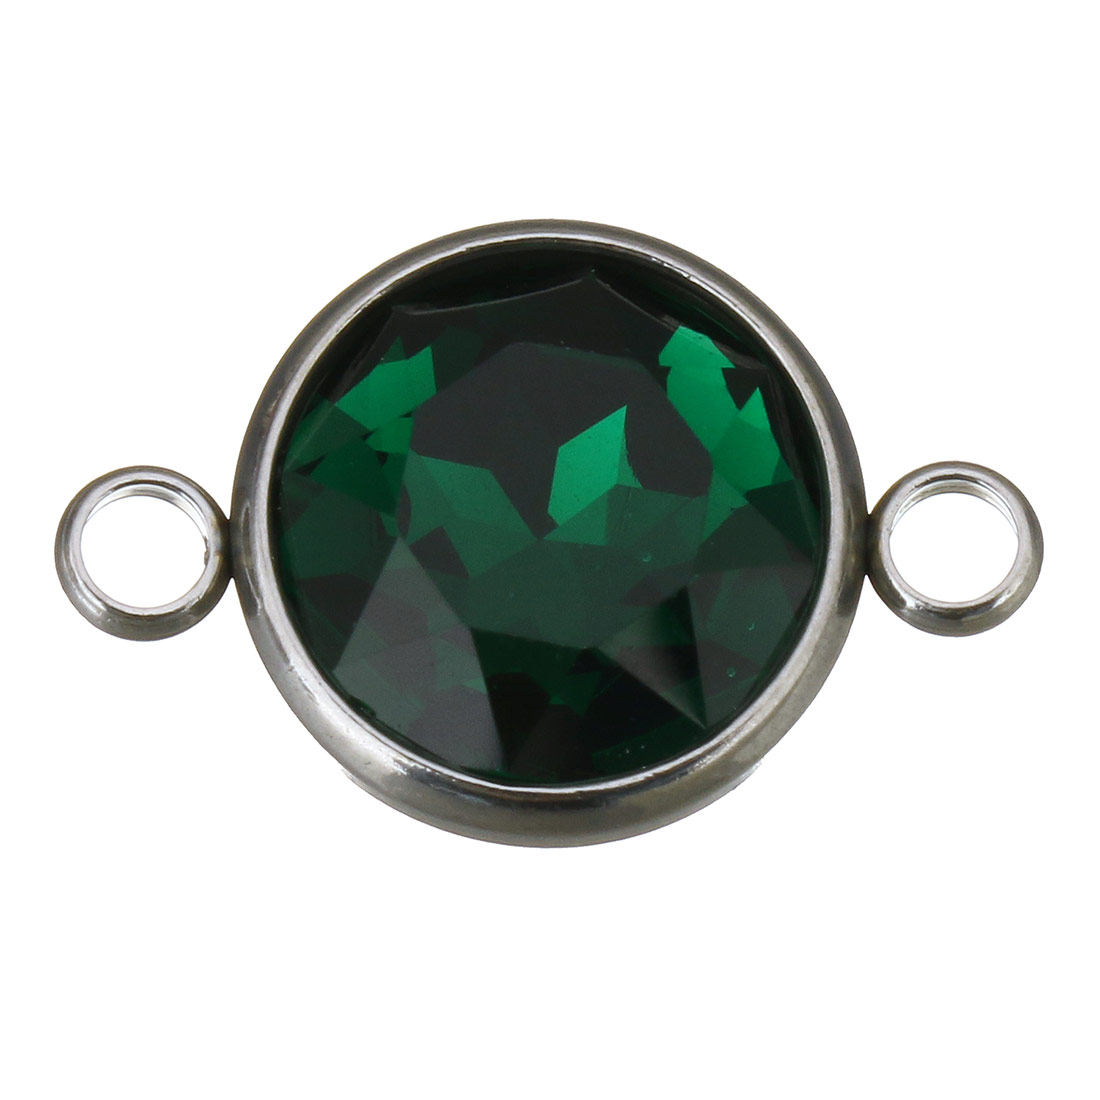 Kristall schwarz grün